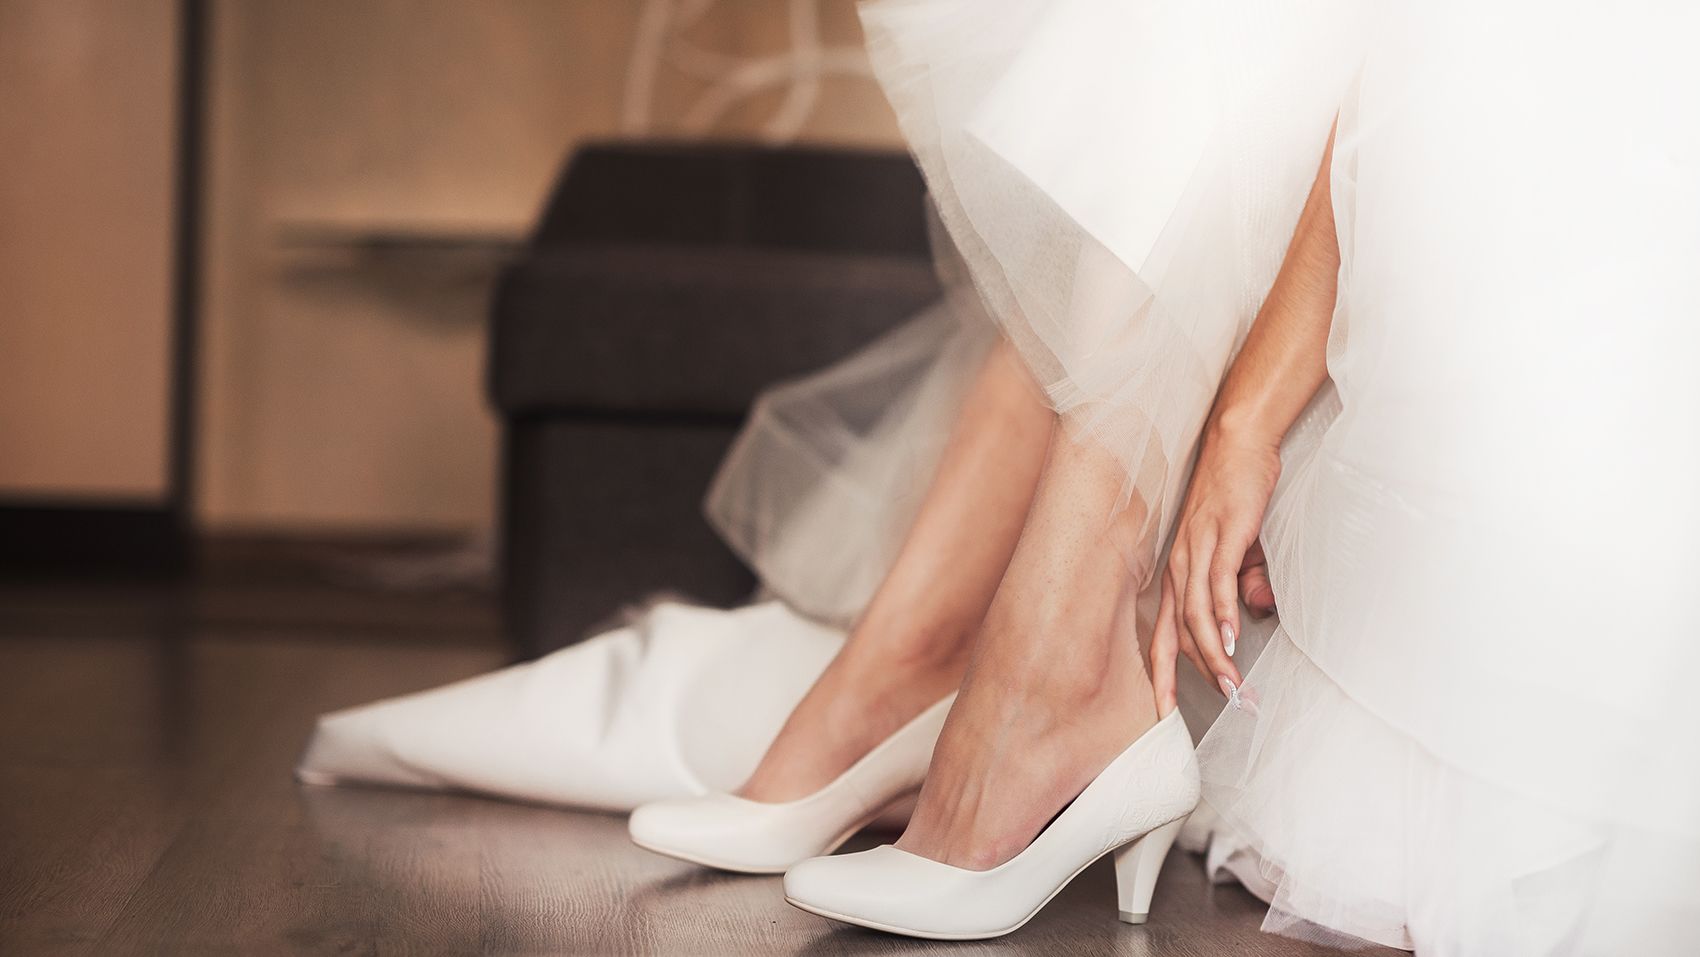 نکات مهم حین خرید کیف و کفش عروسی